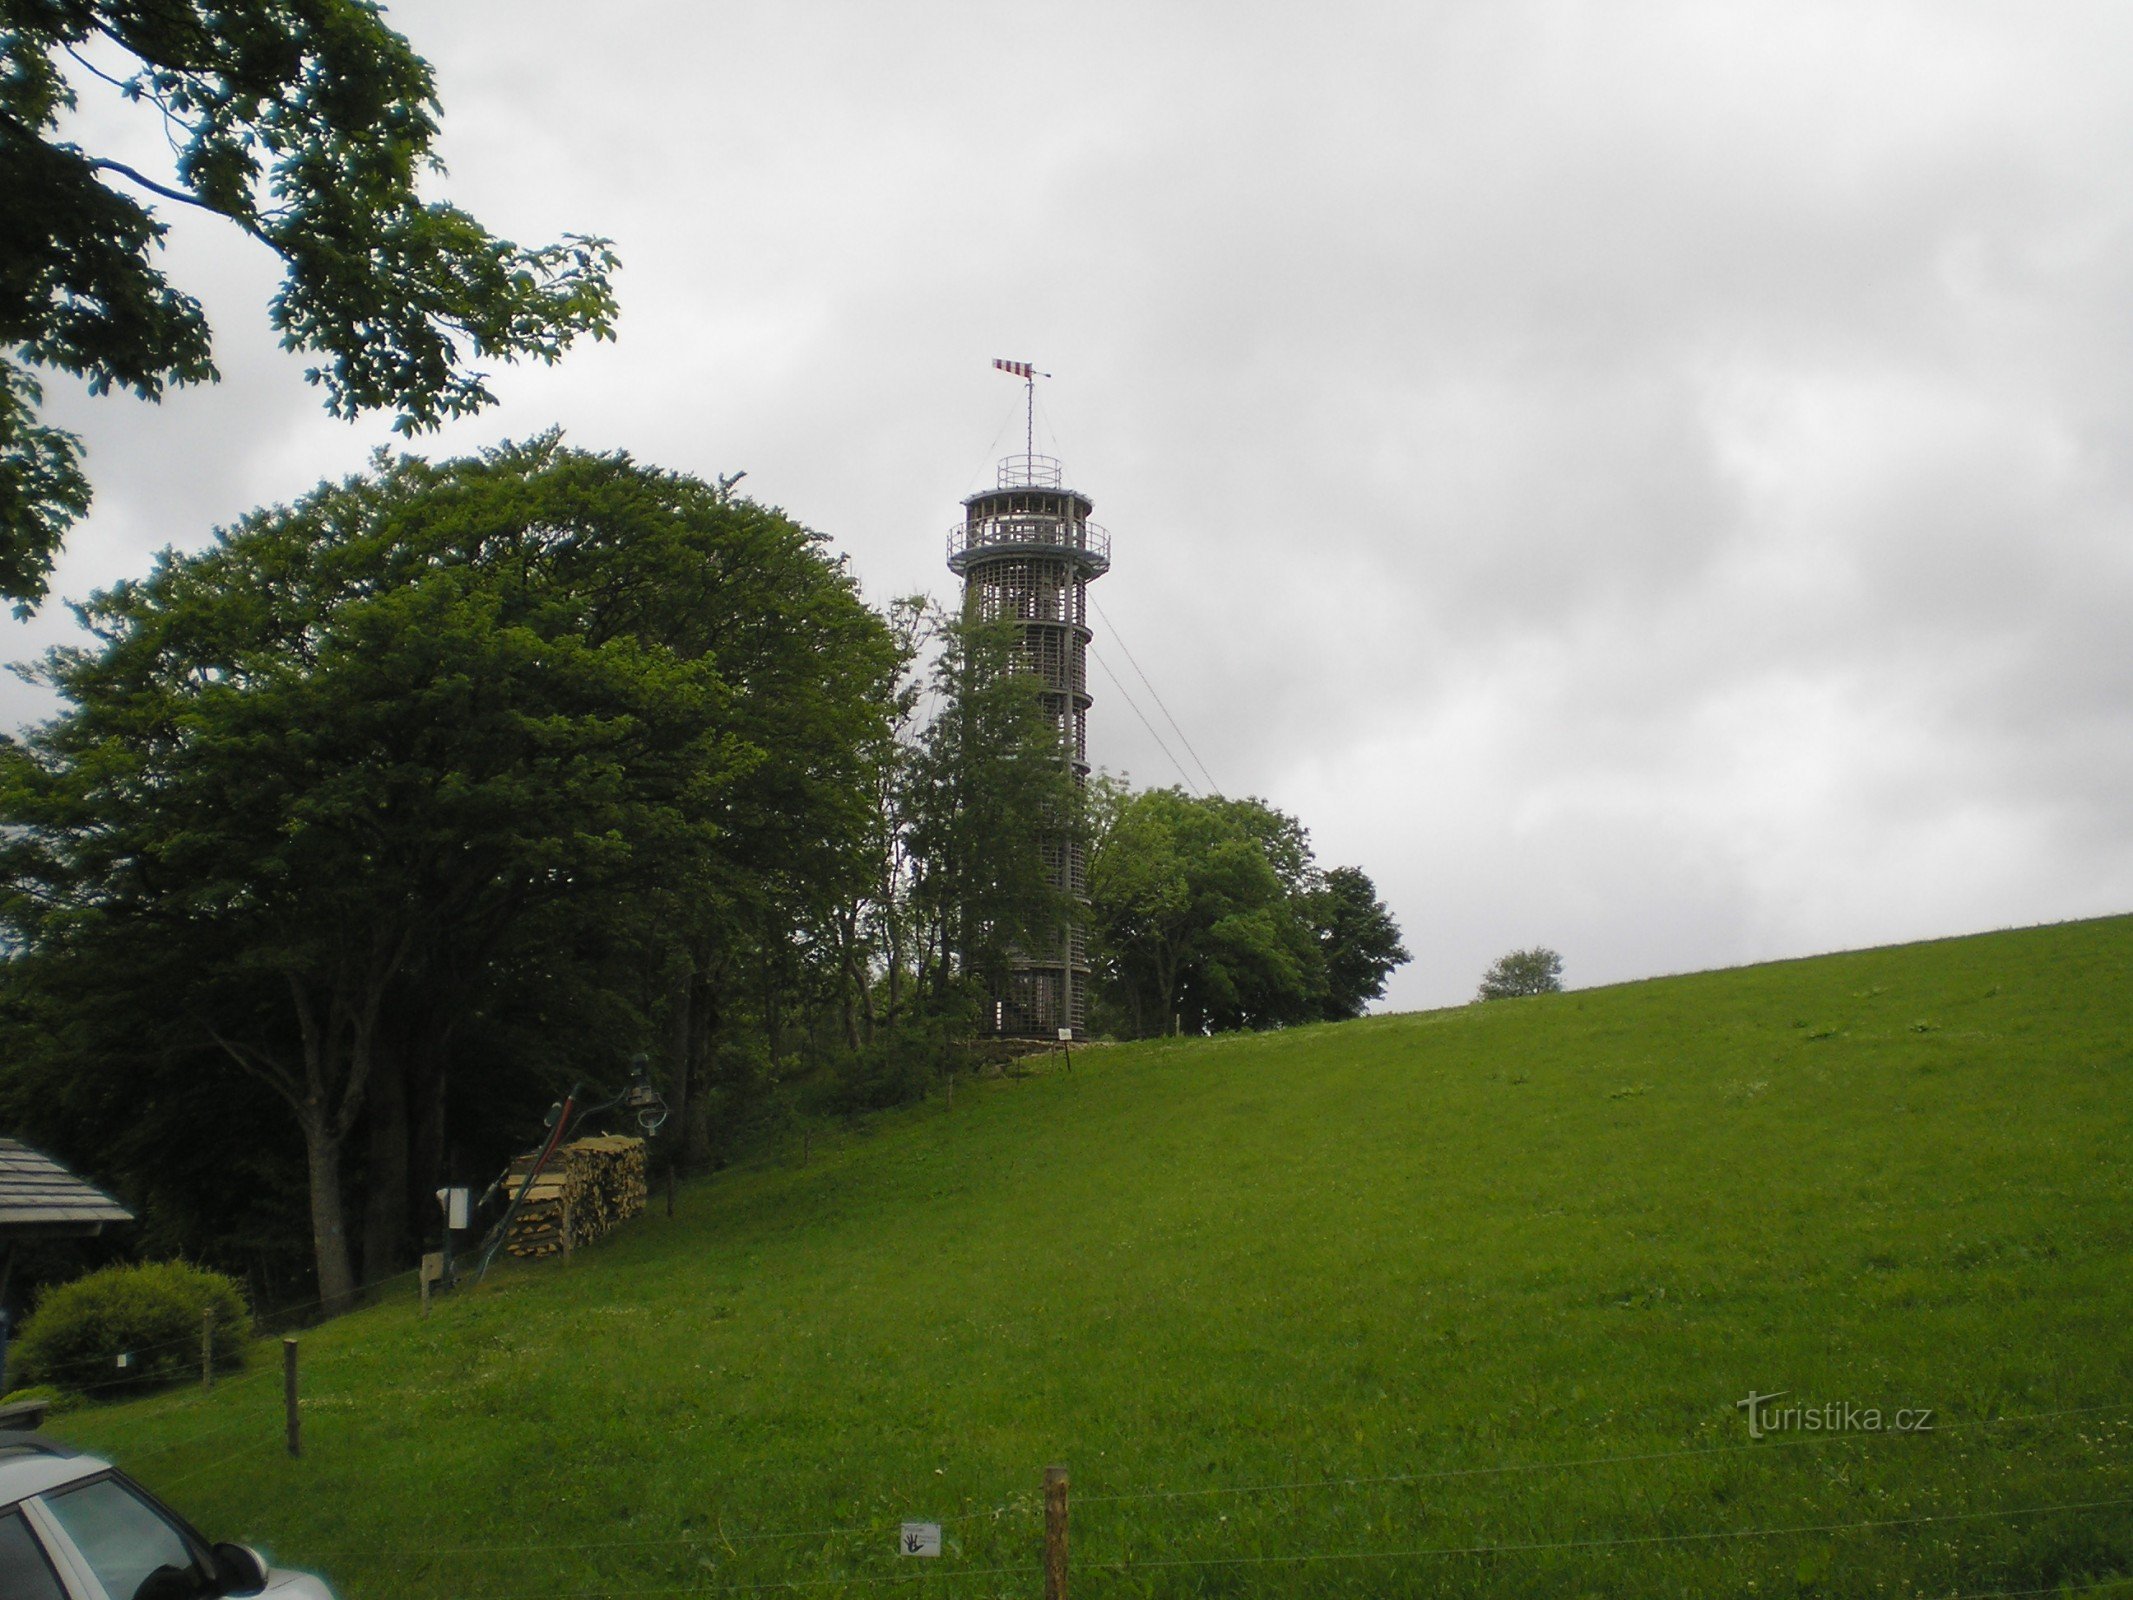 Razgledni stolp svetilnika Jára Cimrman